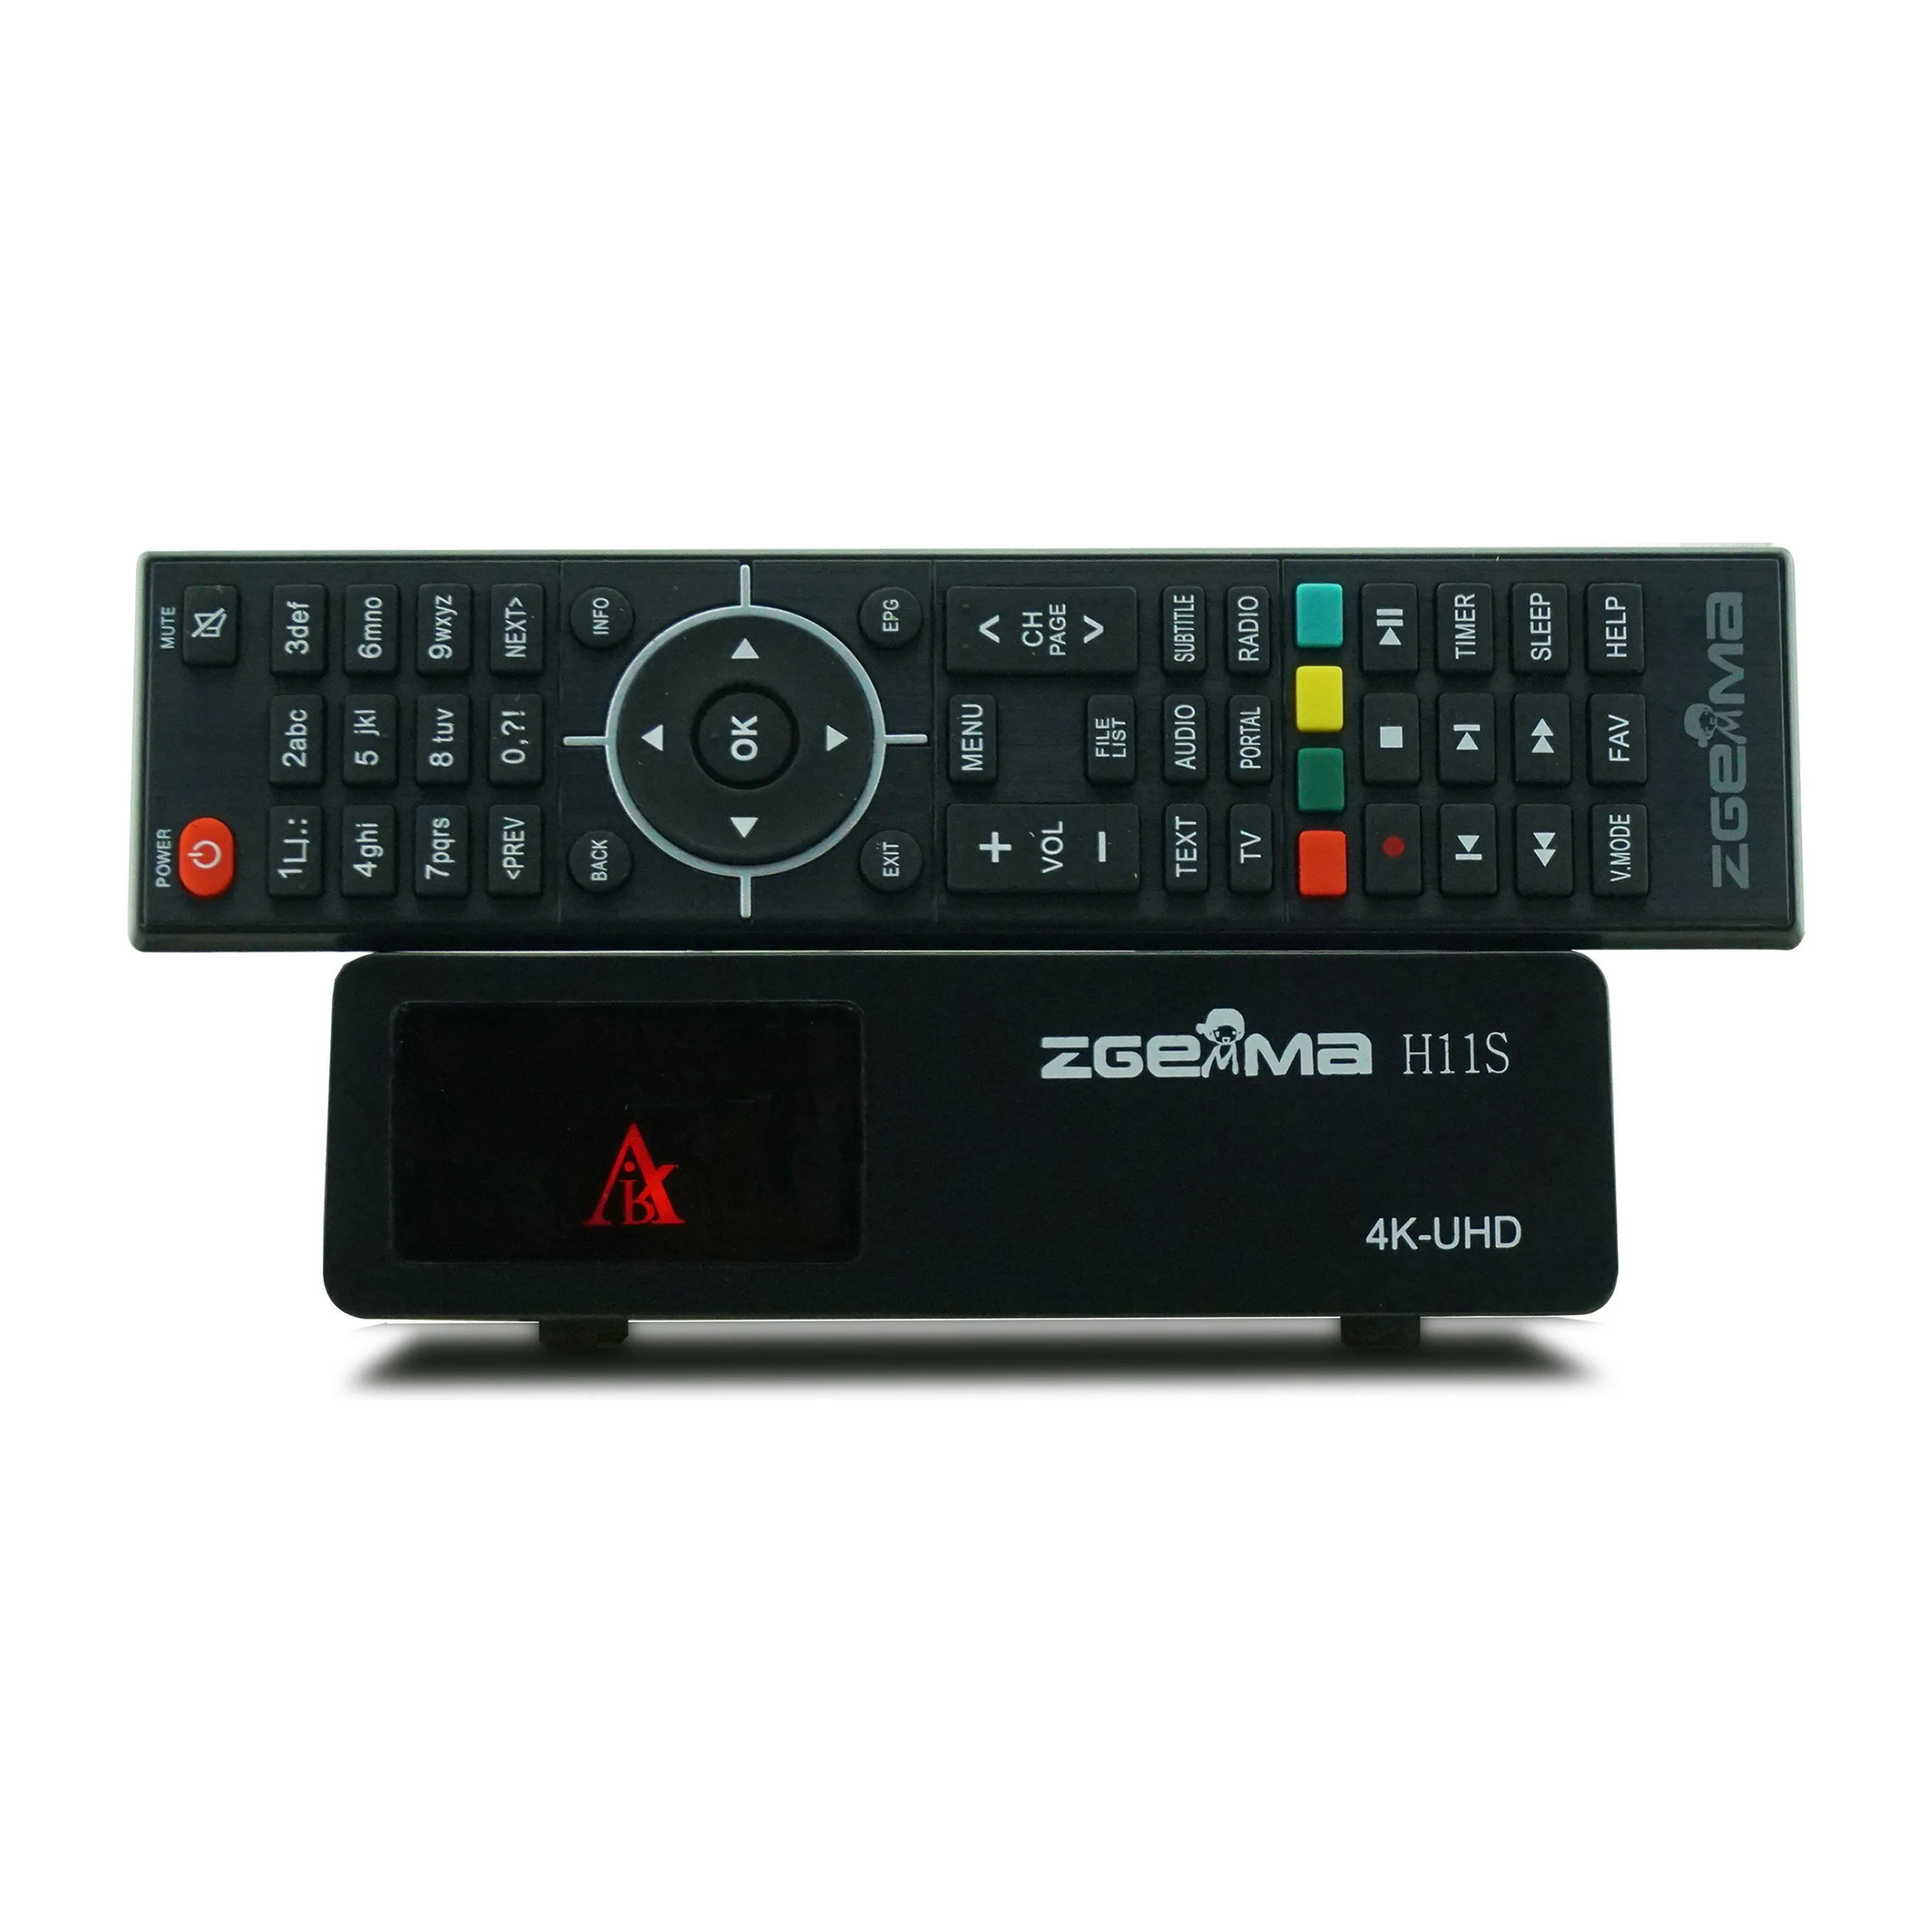 

ZGEMMA H11S 4K Enigma2 Linux OS tv декодер DVB-S2X приемник спутникового телевидения